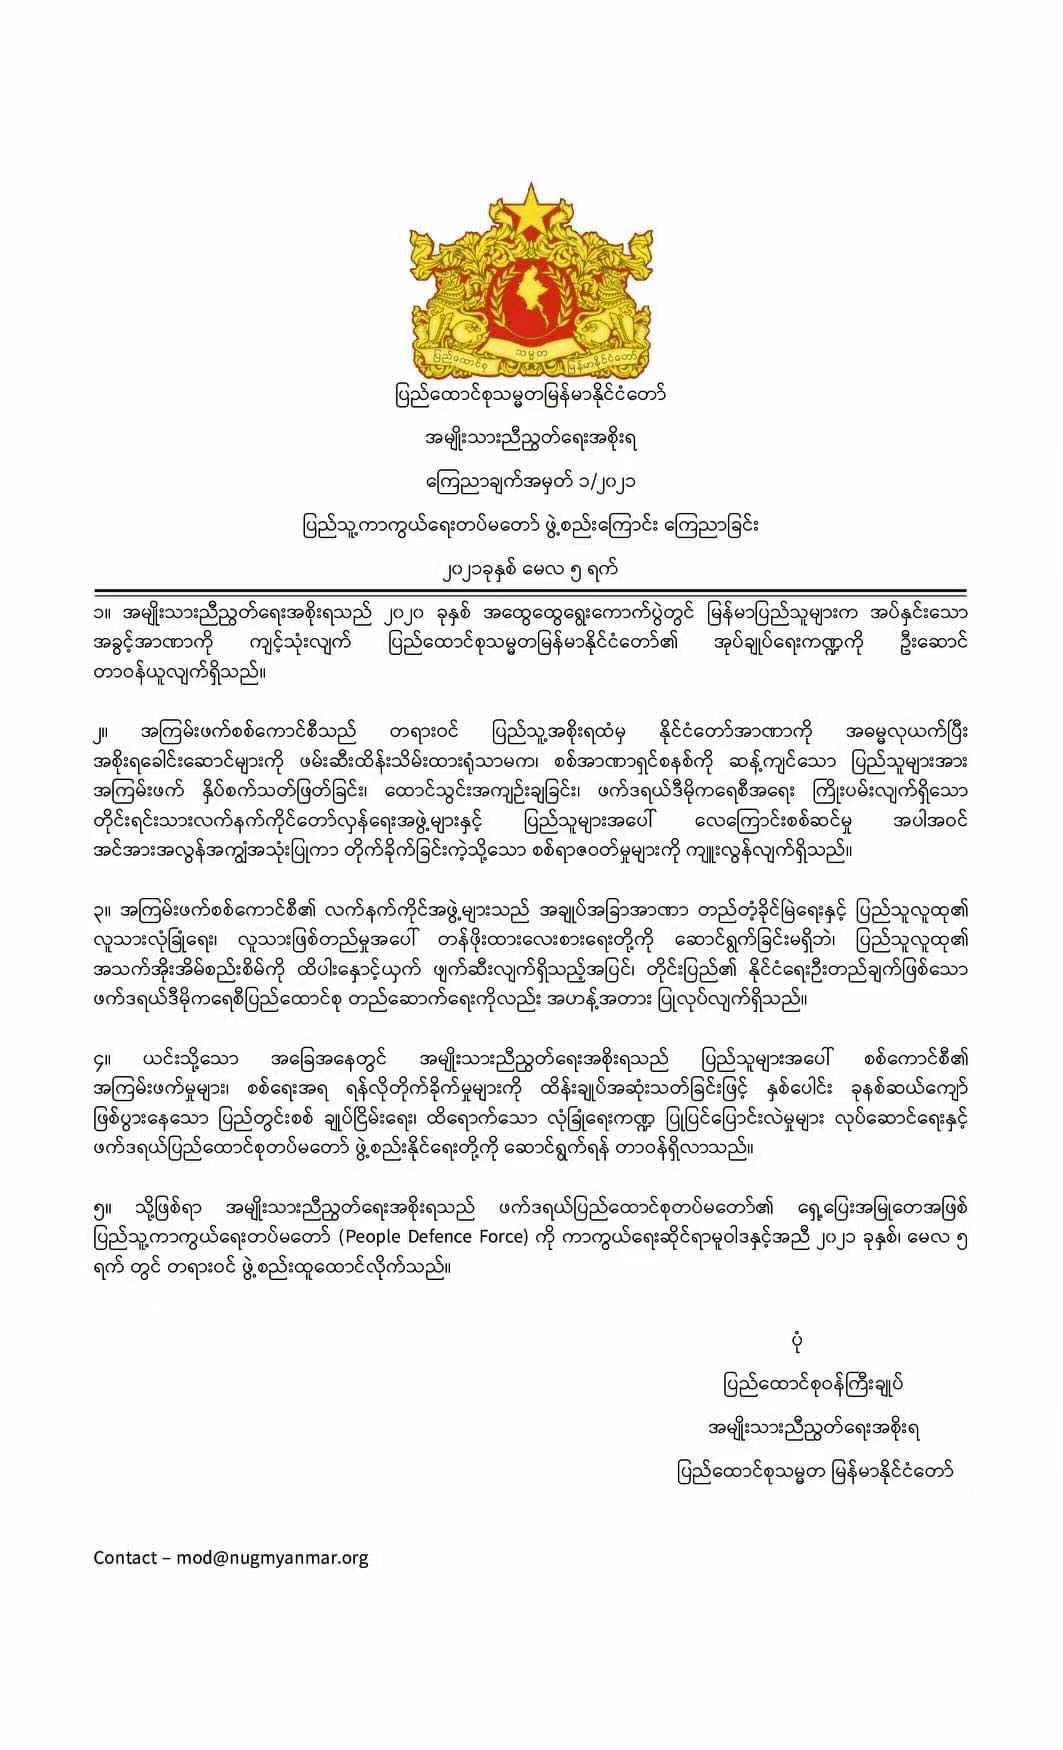 缅甸民族团结政府宣布组建人民国防军